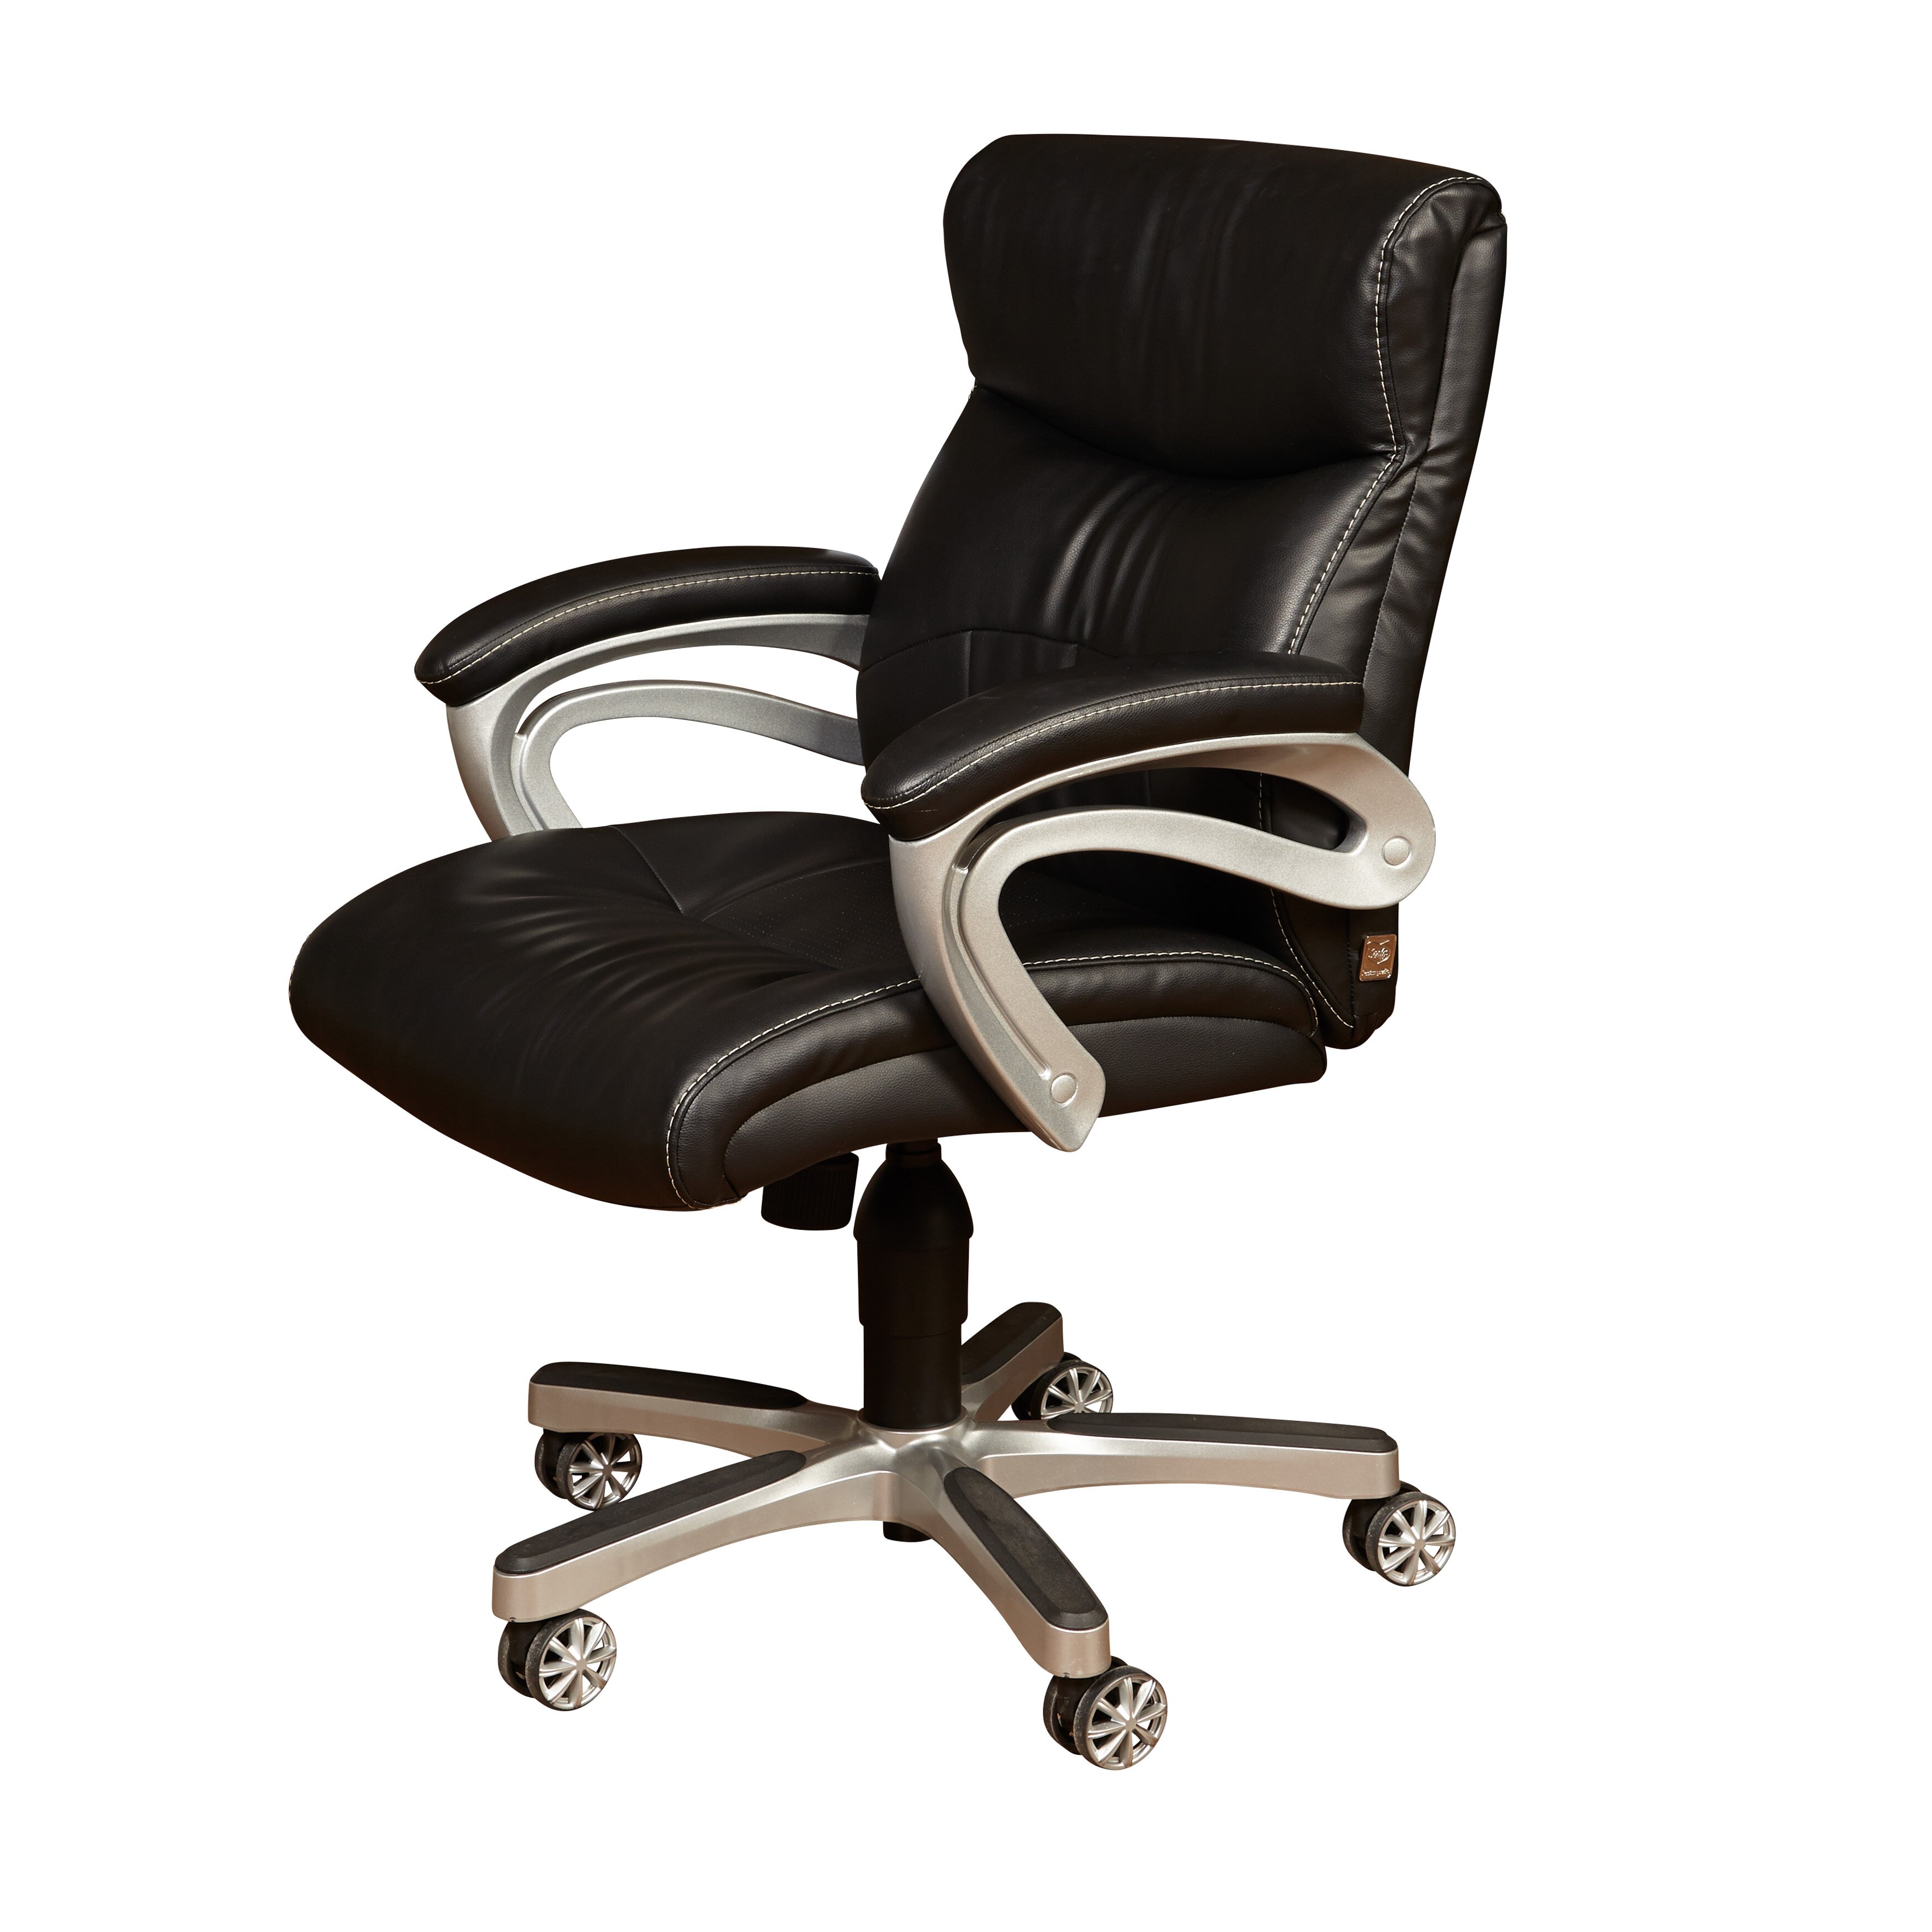 PRI Sealy Posturepedic%2525E2%252584%2525A2 Fixed Arm Chair Black DS 1942 452 4 